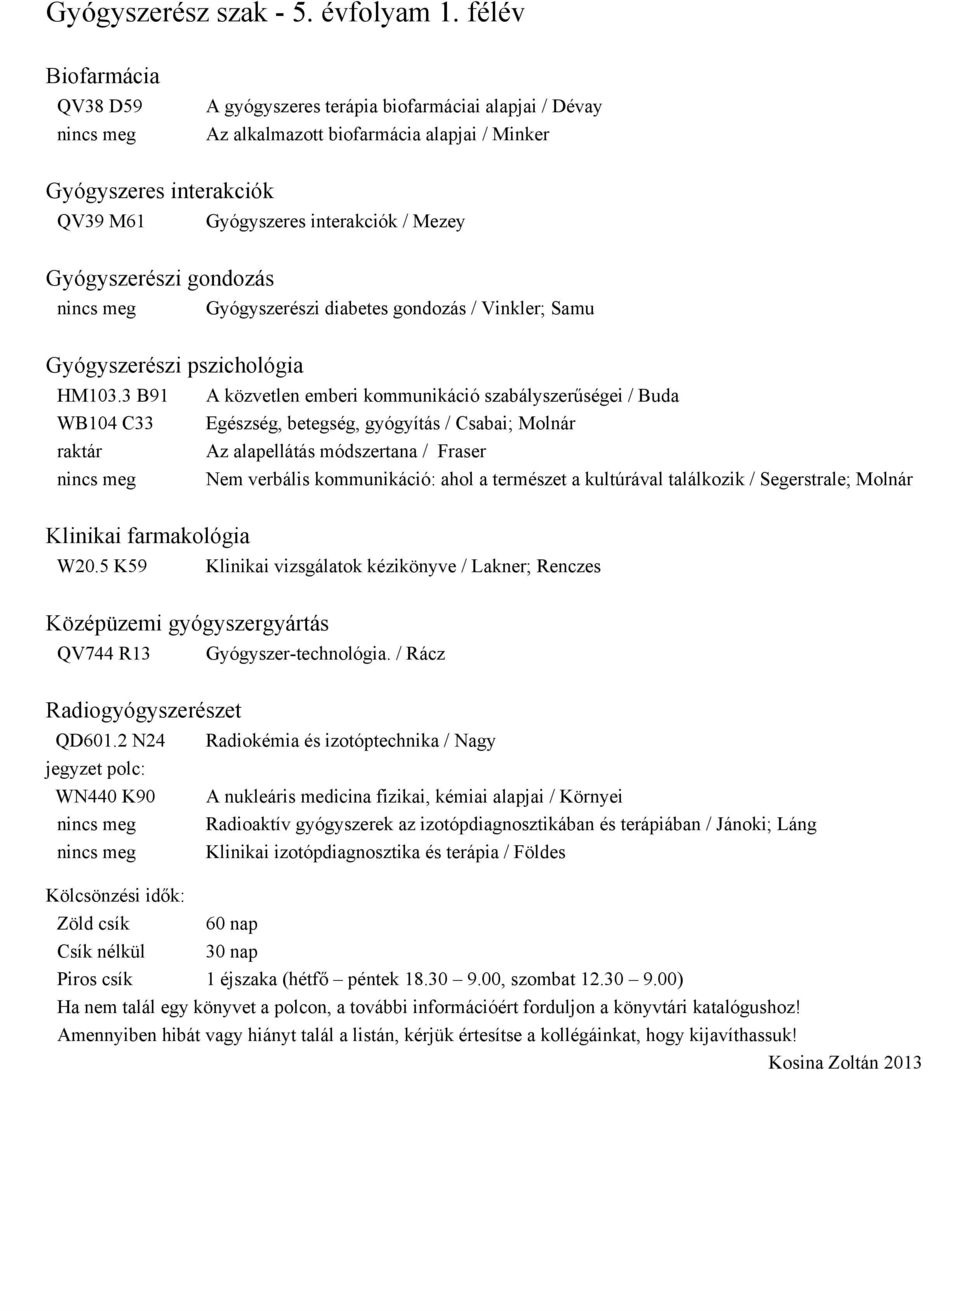 Gyógyszerészi gondozás Gyógyszerészi diabetes gondozás / Vinkler; Samu Gyógyszerészi pszichológia HM103.